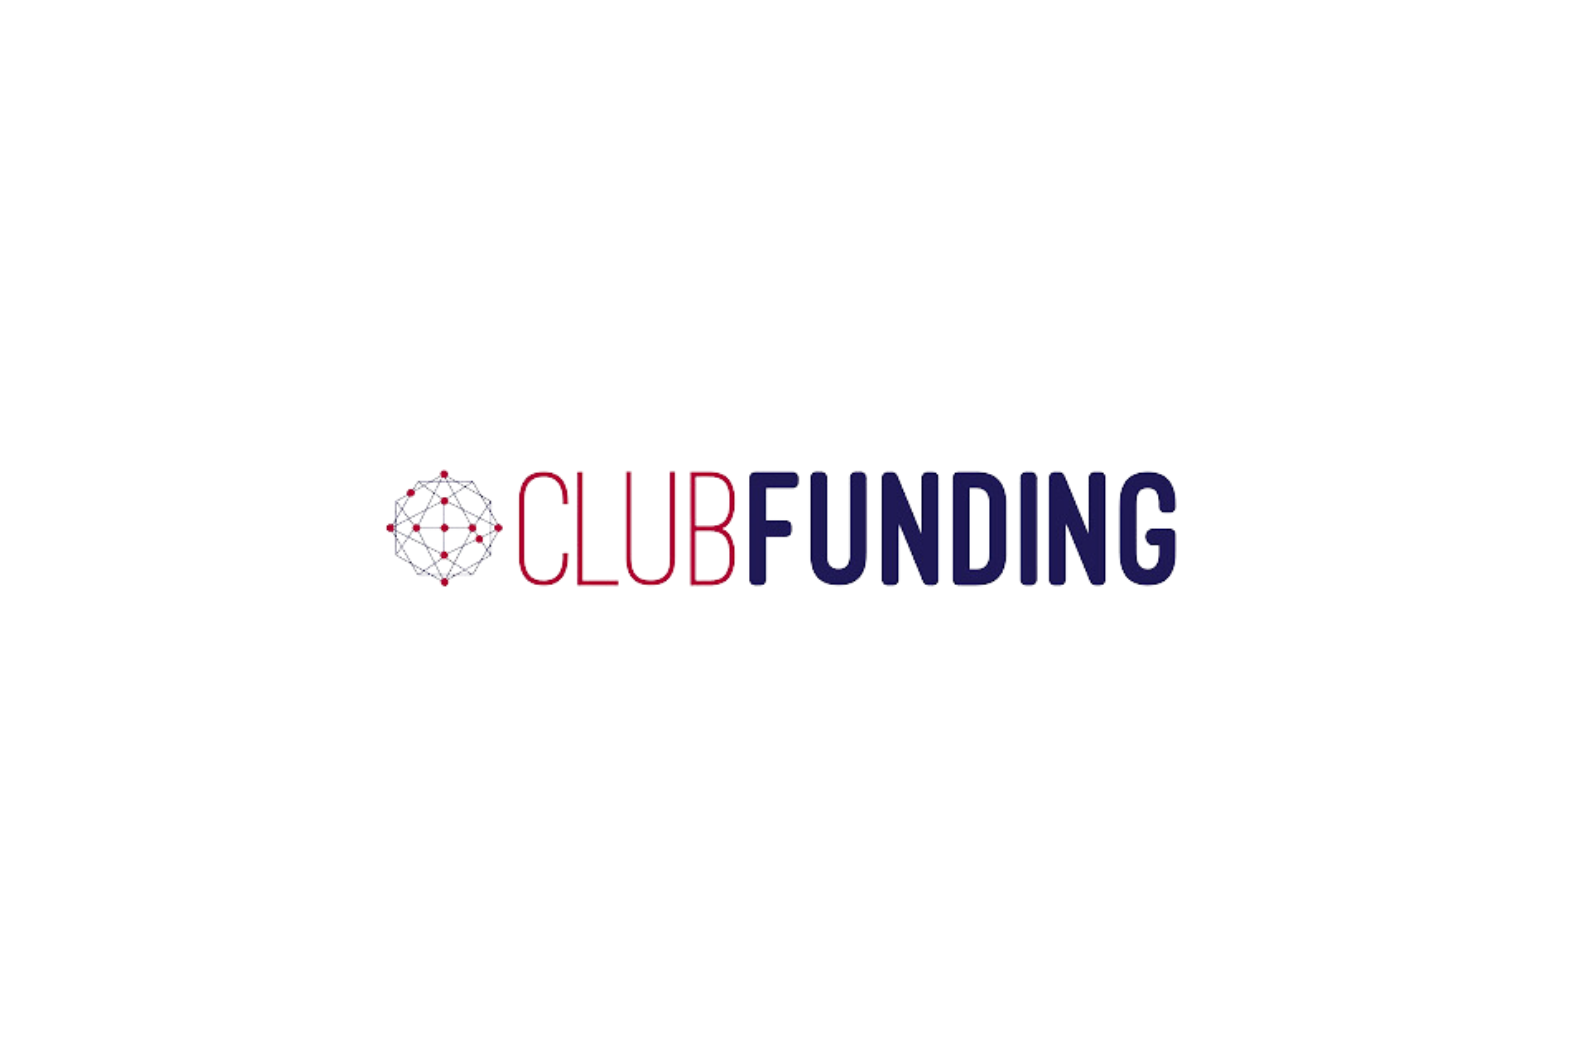 CLUBFunding logo